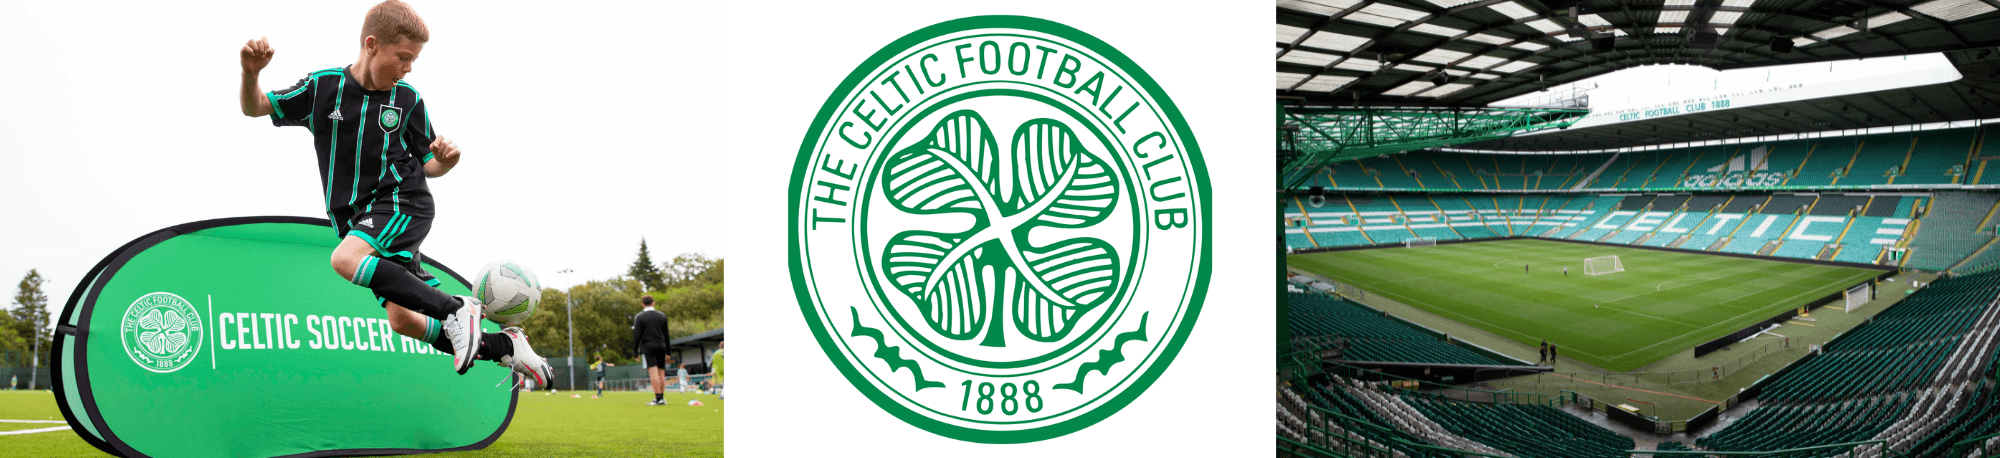 Celtic Training, Club Crest and Stadium